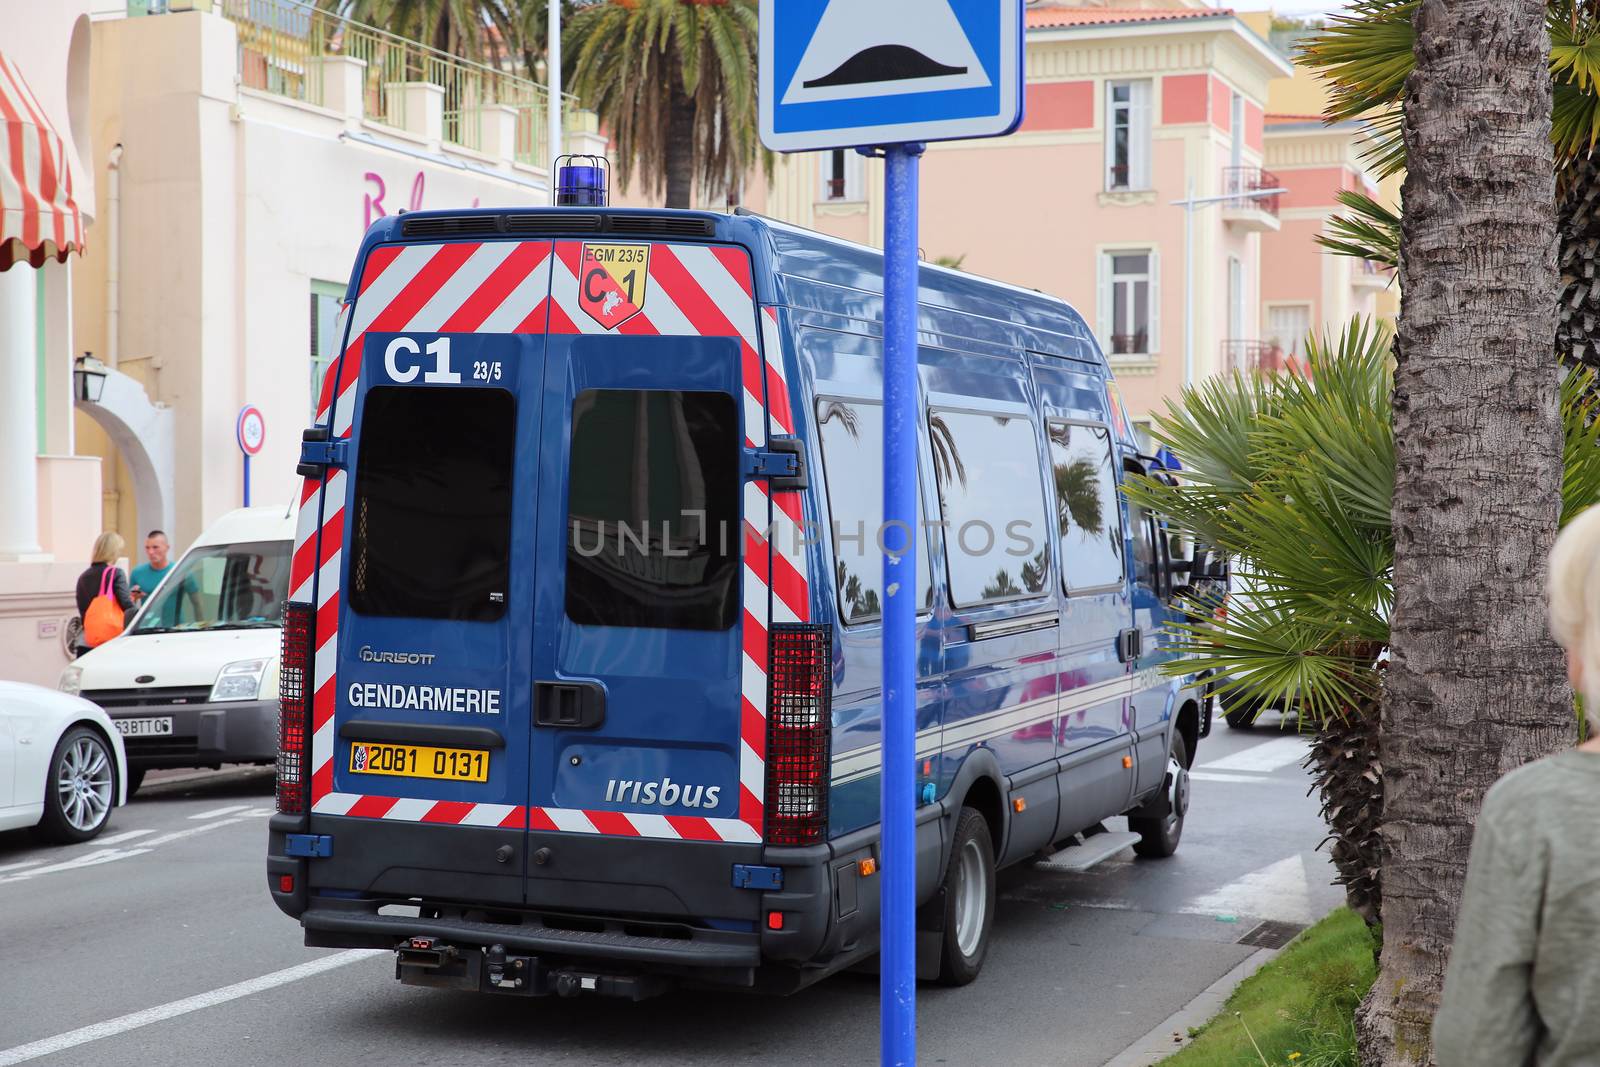 Police (Gendarmerie) Van by bensib